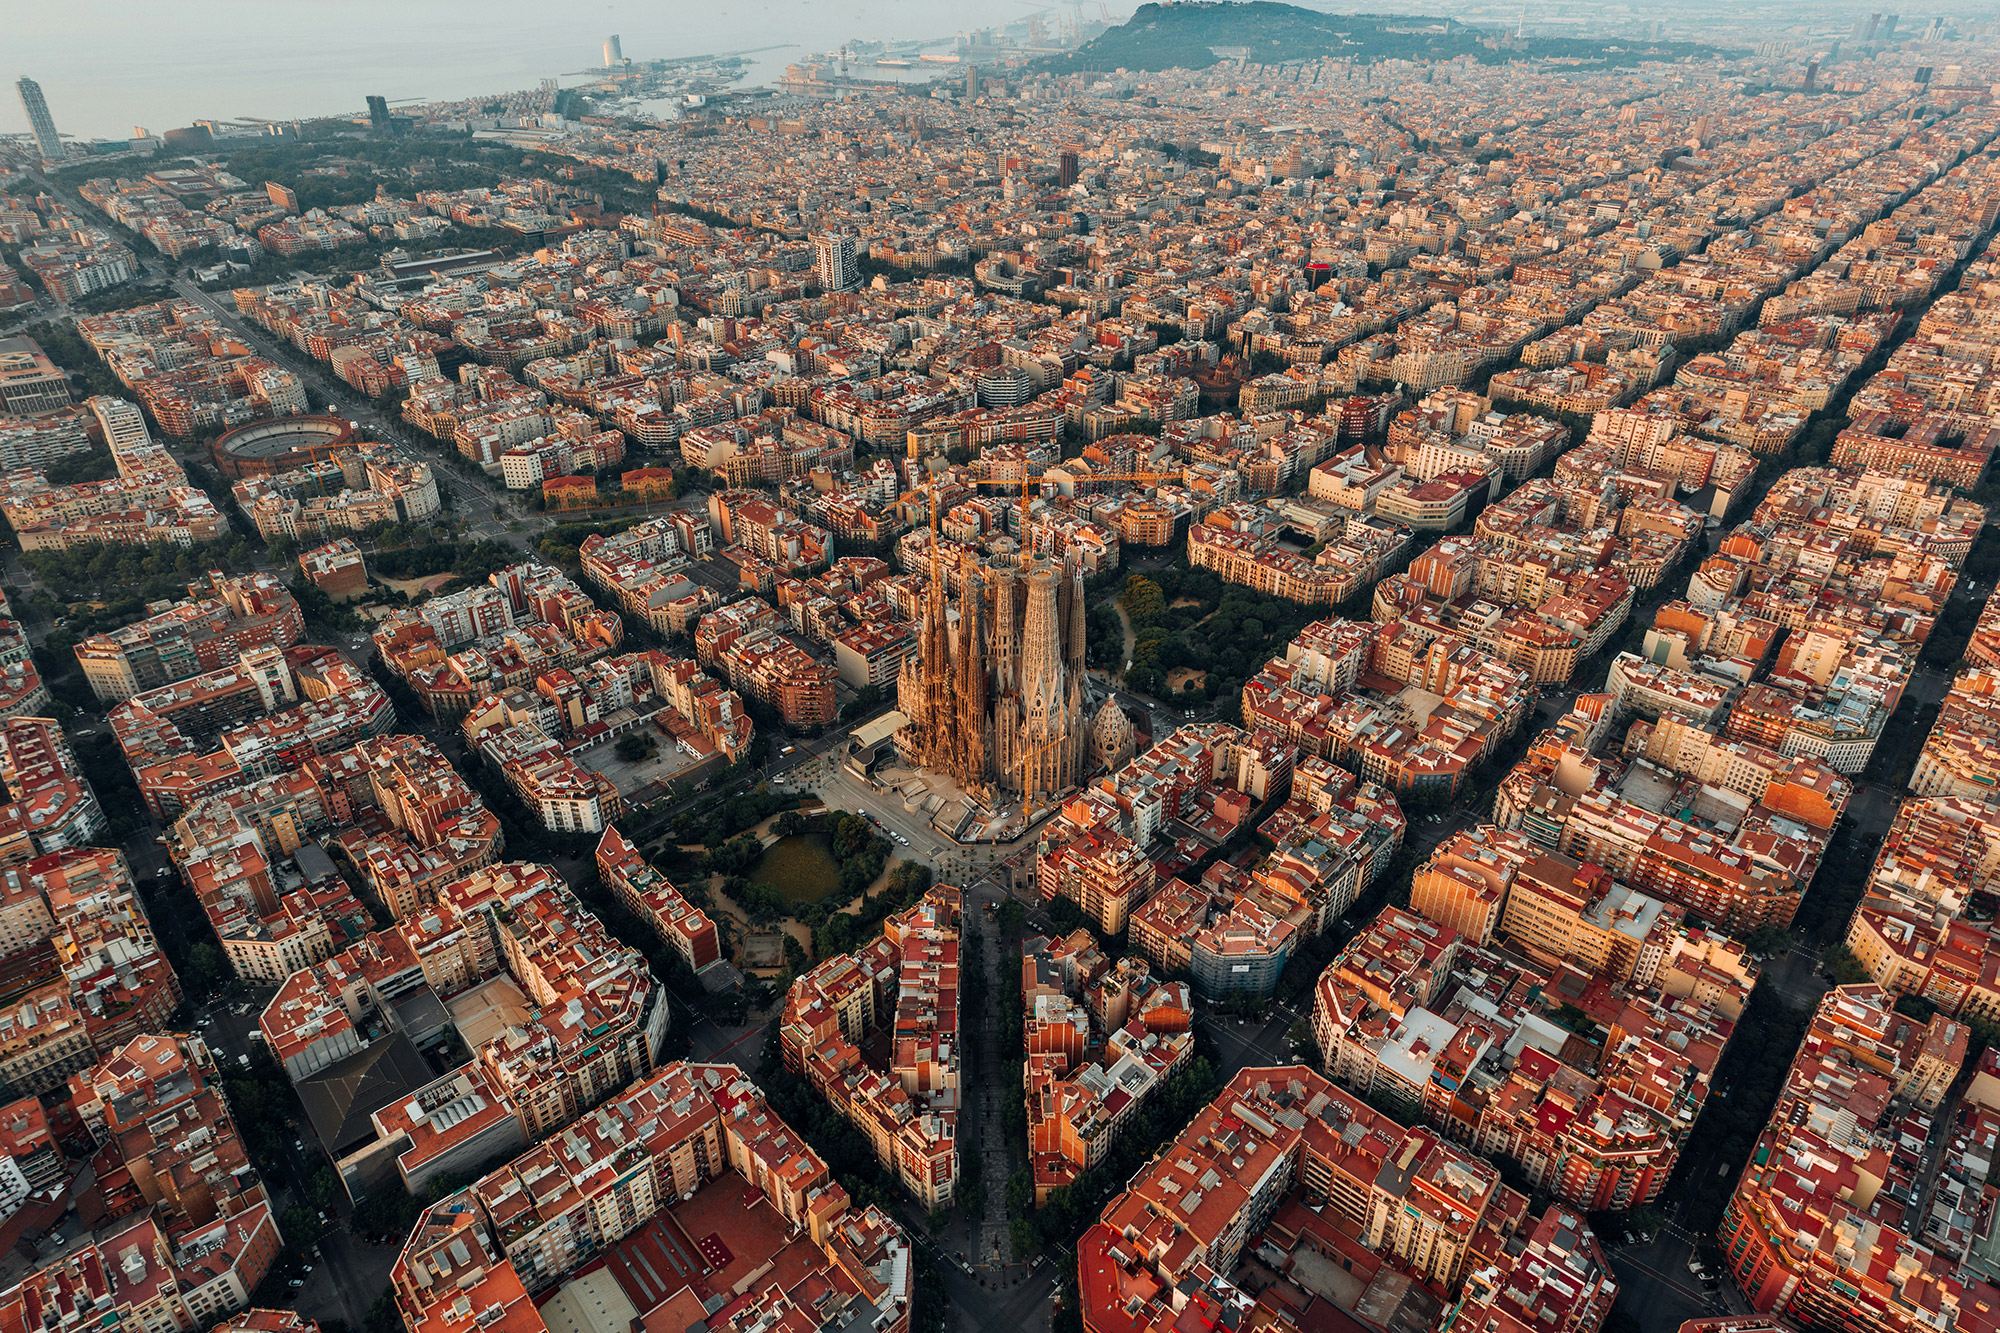 15 Must-See Gaudi Buildings in Barcelona